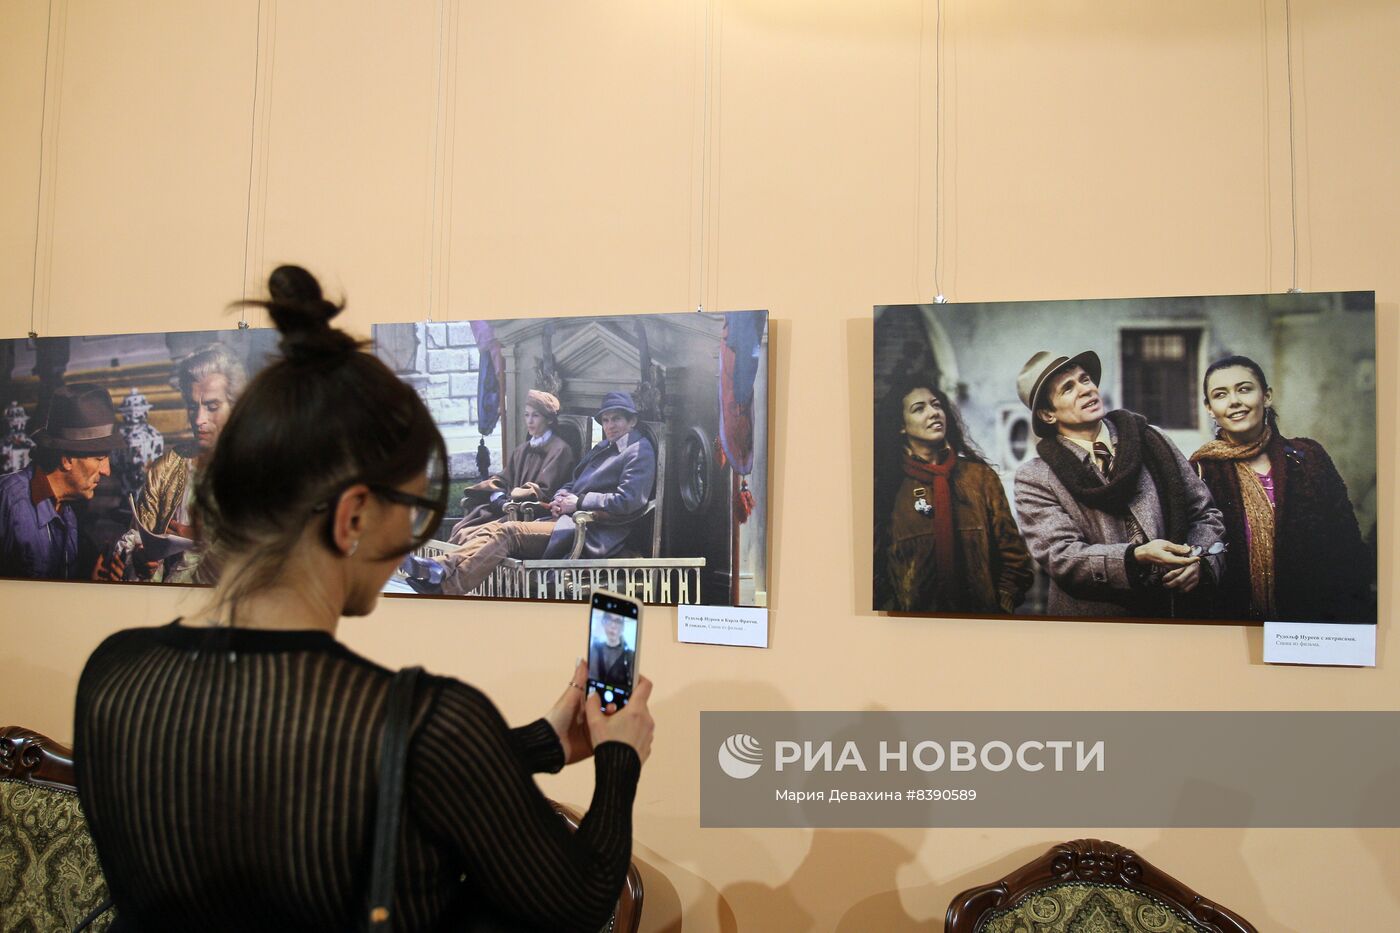 Открытие культурного проекта "Нуреевские сезоны" в Москве